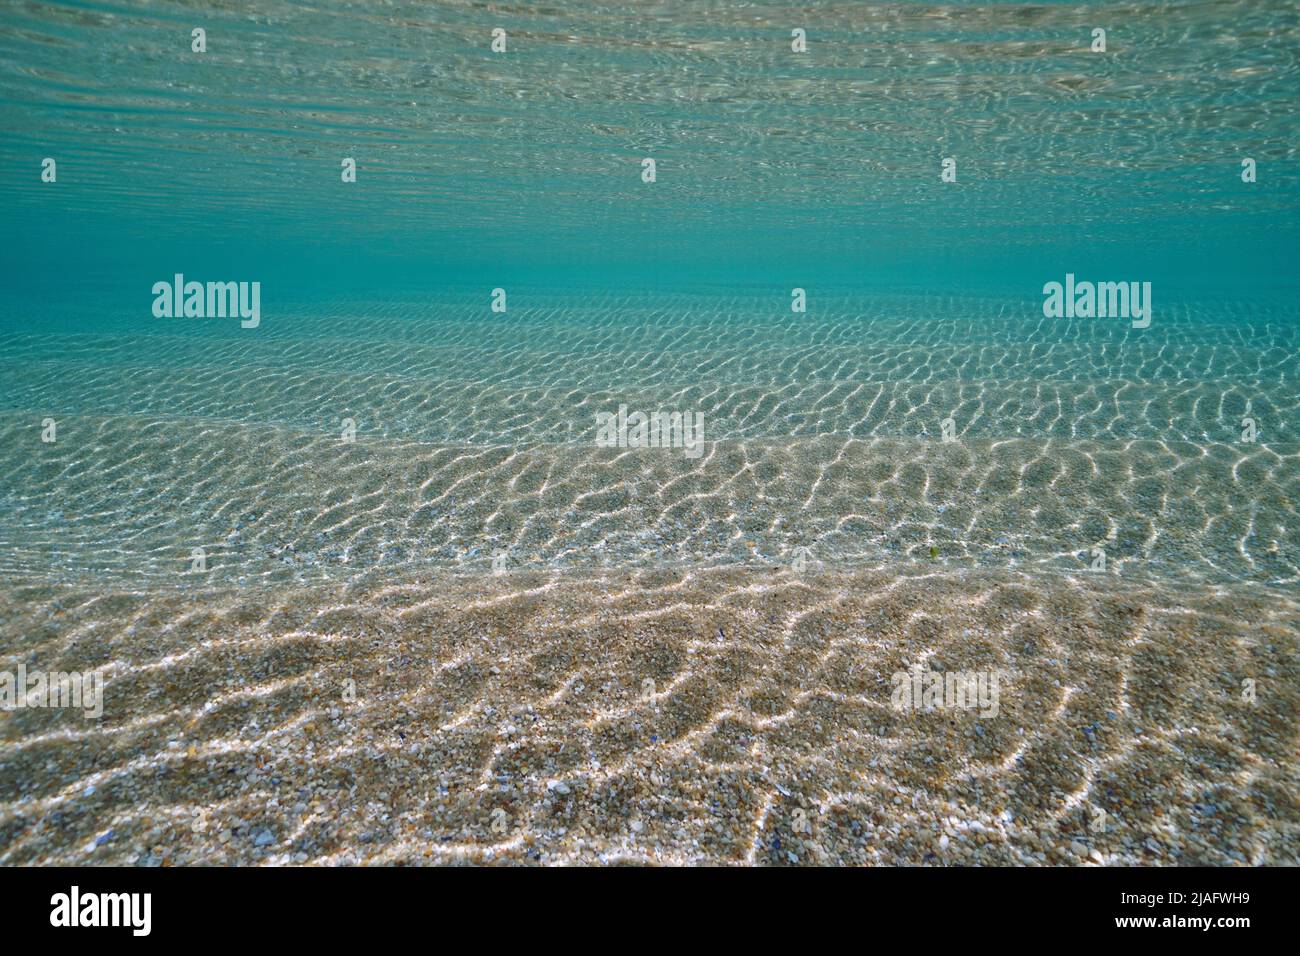 Ripples of sand underwater below sea surface with clear water, natural sandy ocean floor, Atlantic ocean, Spain Stock Photo